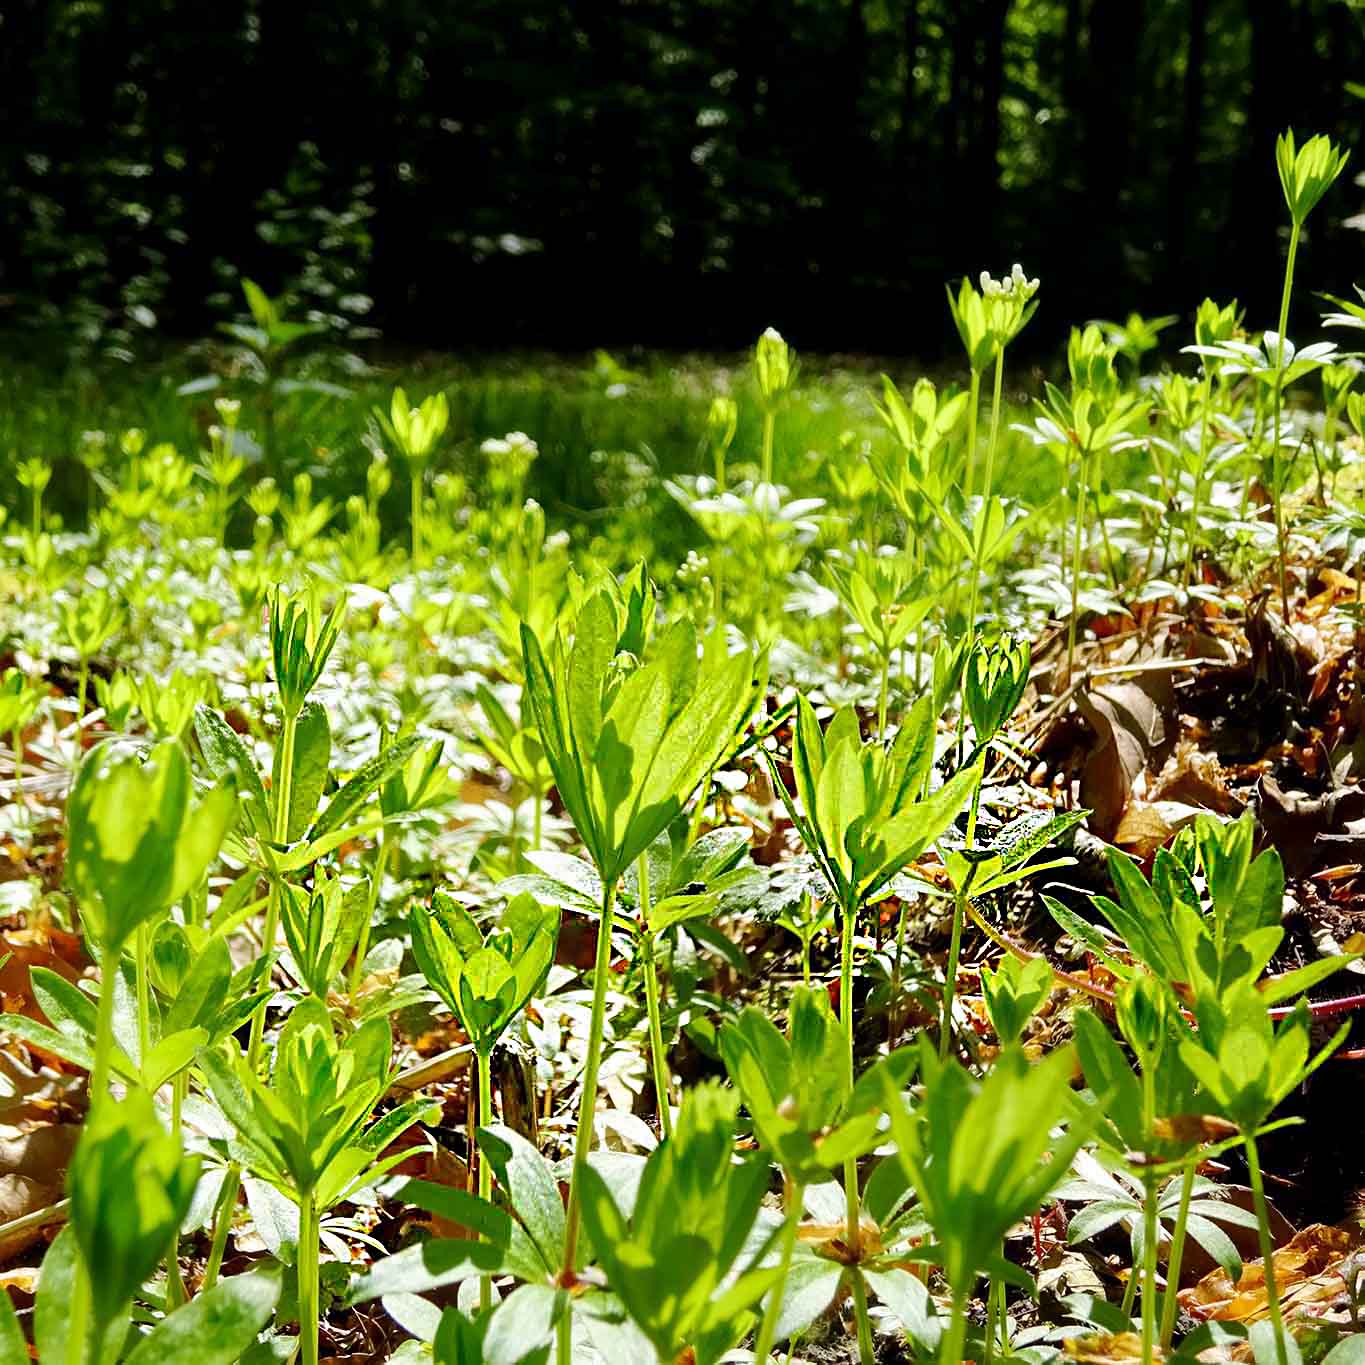 Aromatisch duftende grüne Teppiche bilden die kleinen zierlichen Waldmeisterpflänzchen in Buchenwäldern.